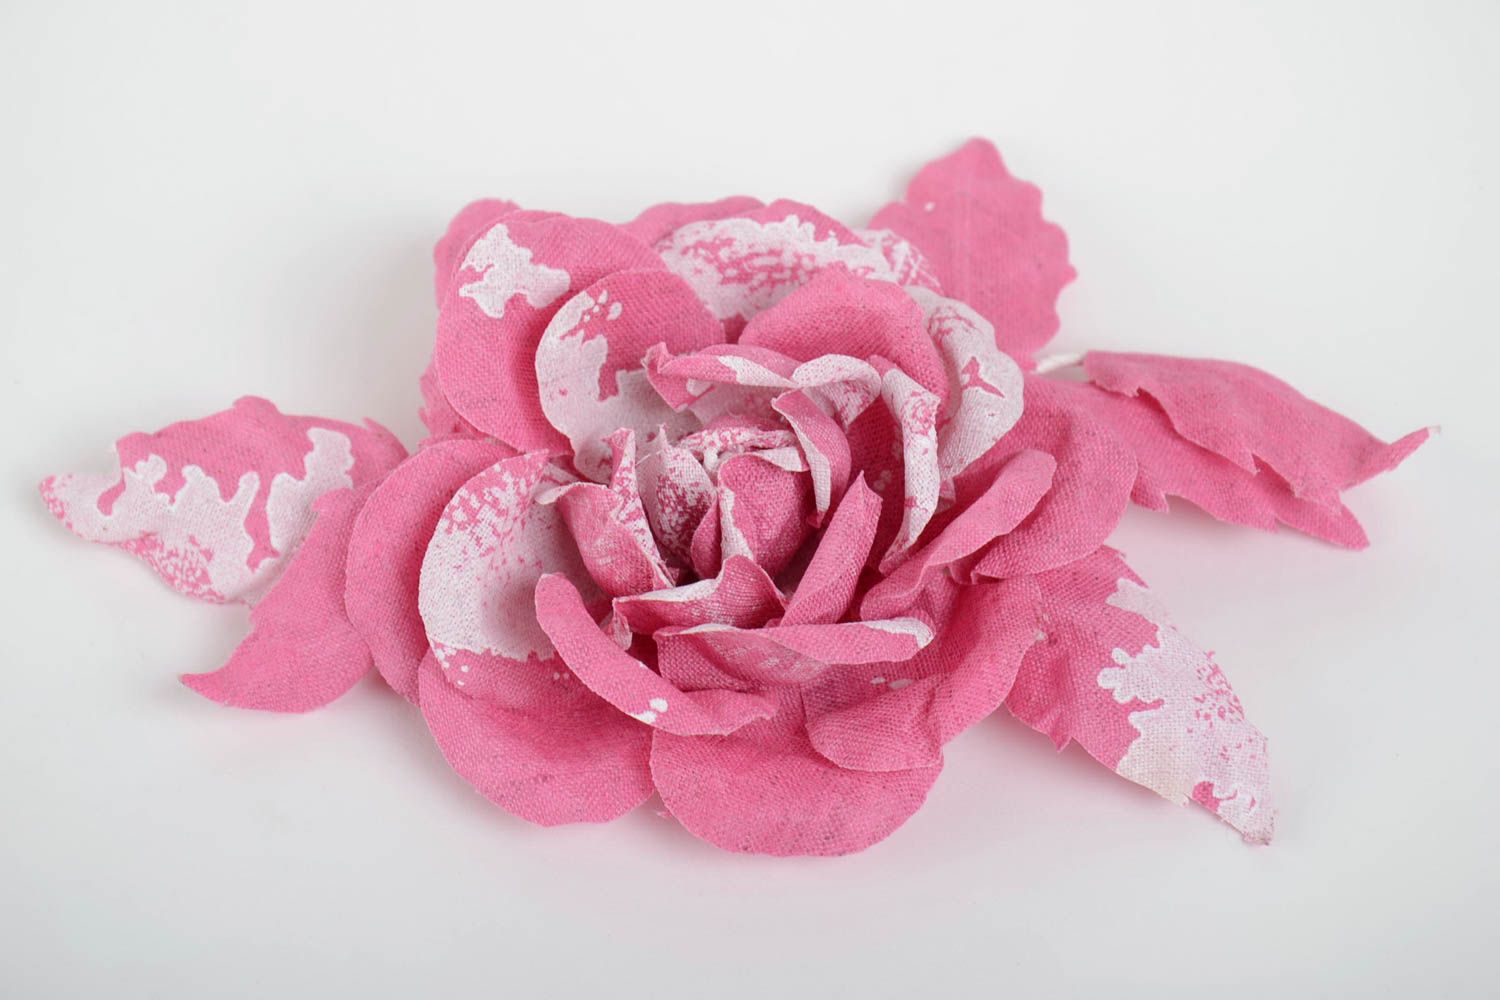 Брошь заколка из ткани розовая большая красивая крупная женская ручной работы фото 2